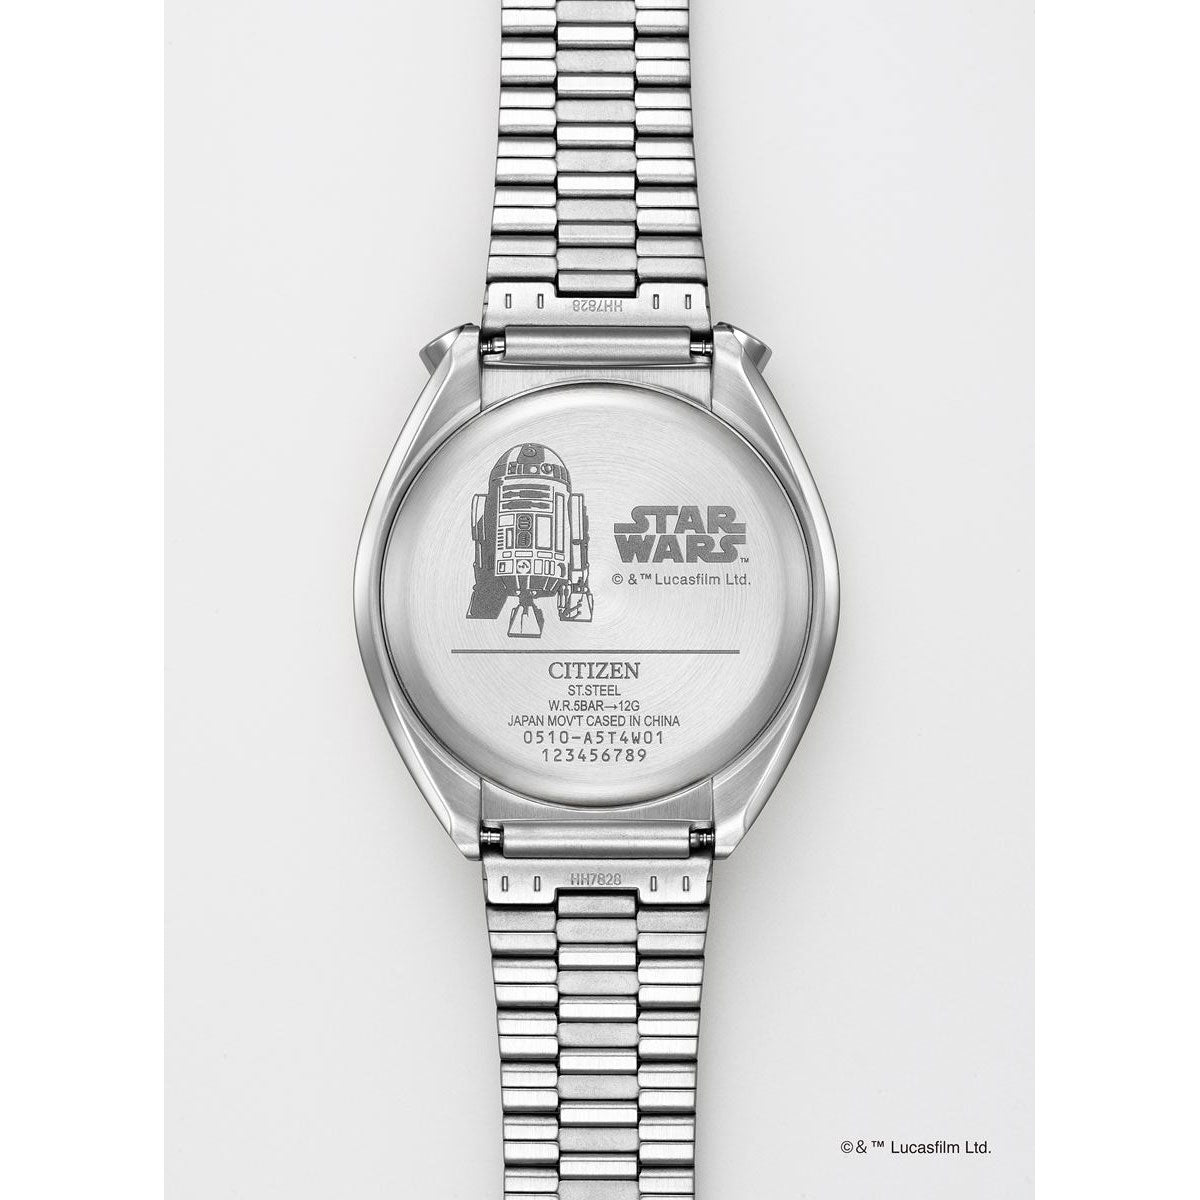 シチズン レコードレーベル ツノクロノ スター・ウォーズ 特定店取扱 限定モデル ｢R2ーD2｣ 腕時計 AN3666-51A CITIZEN RECORD LABEL TSUNO CHRONO STAR WARS